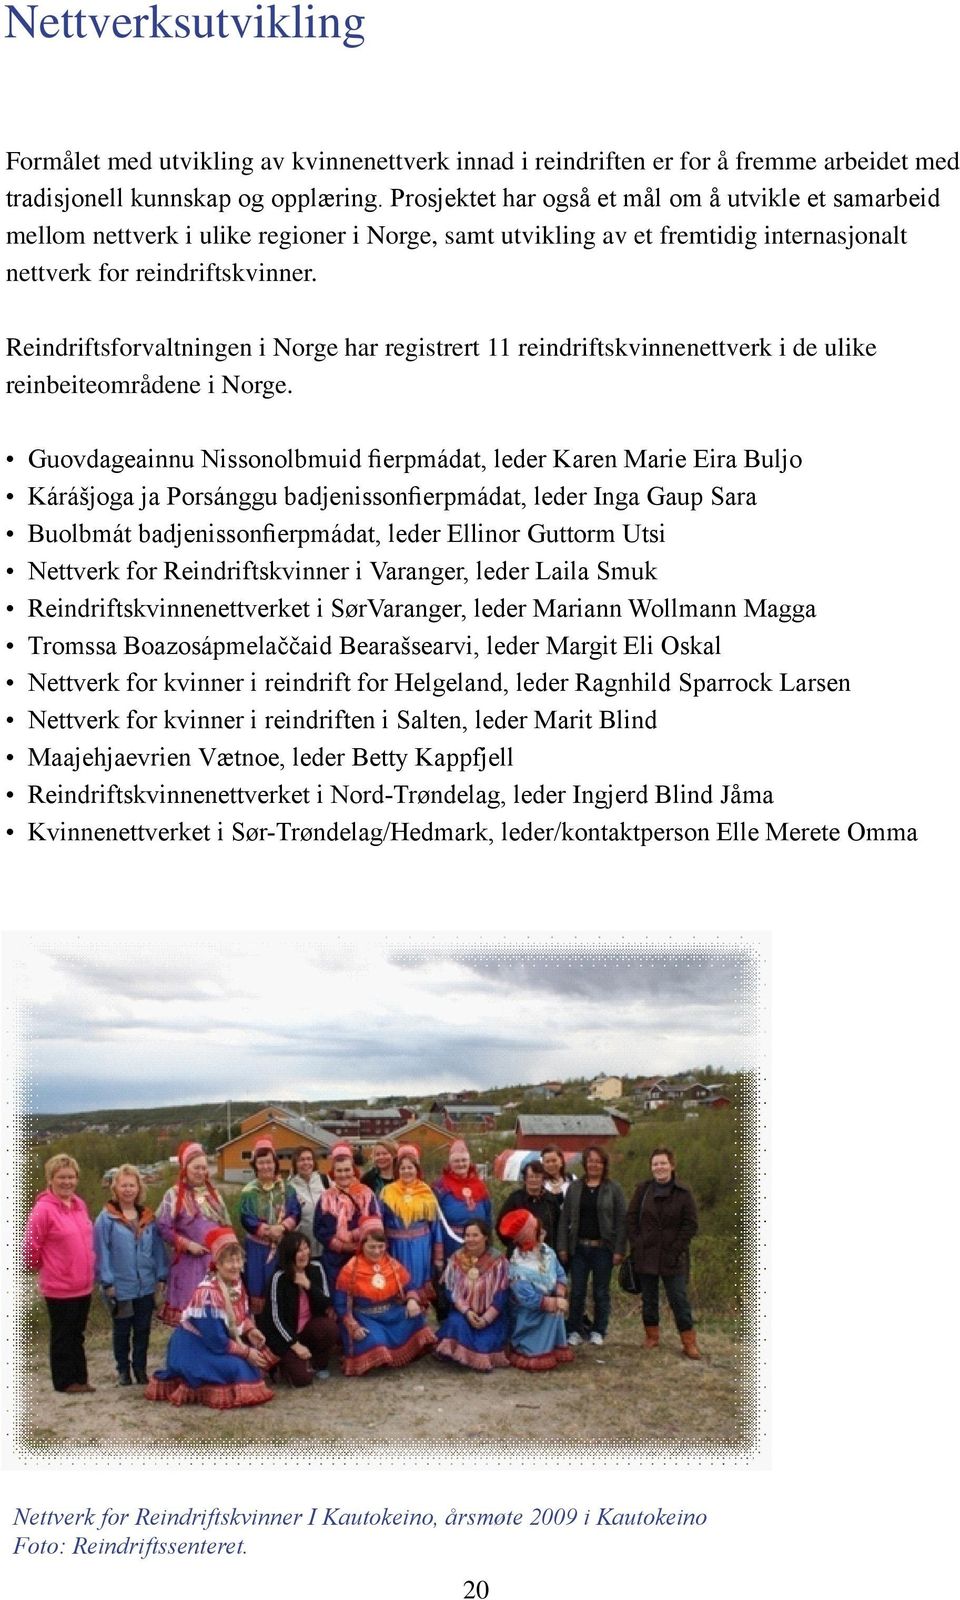 Reindriftsforvaltningen i Norge har registrert 11 reindriftskvinnenettverk i de ulike reinbeiteområdene i Norge.